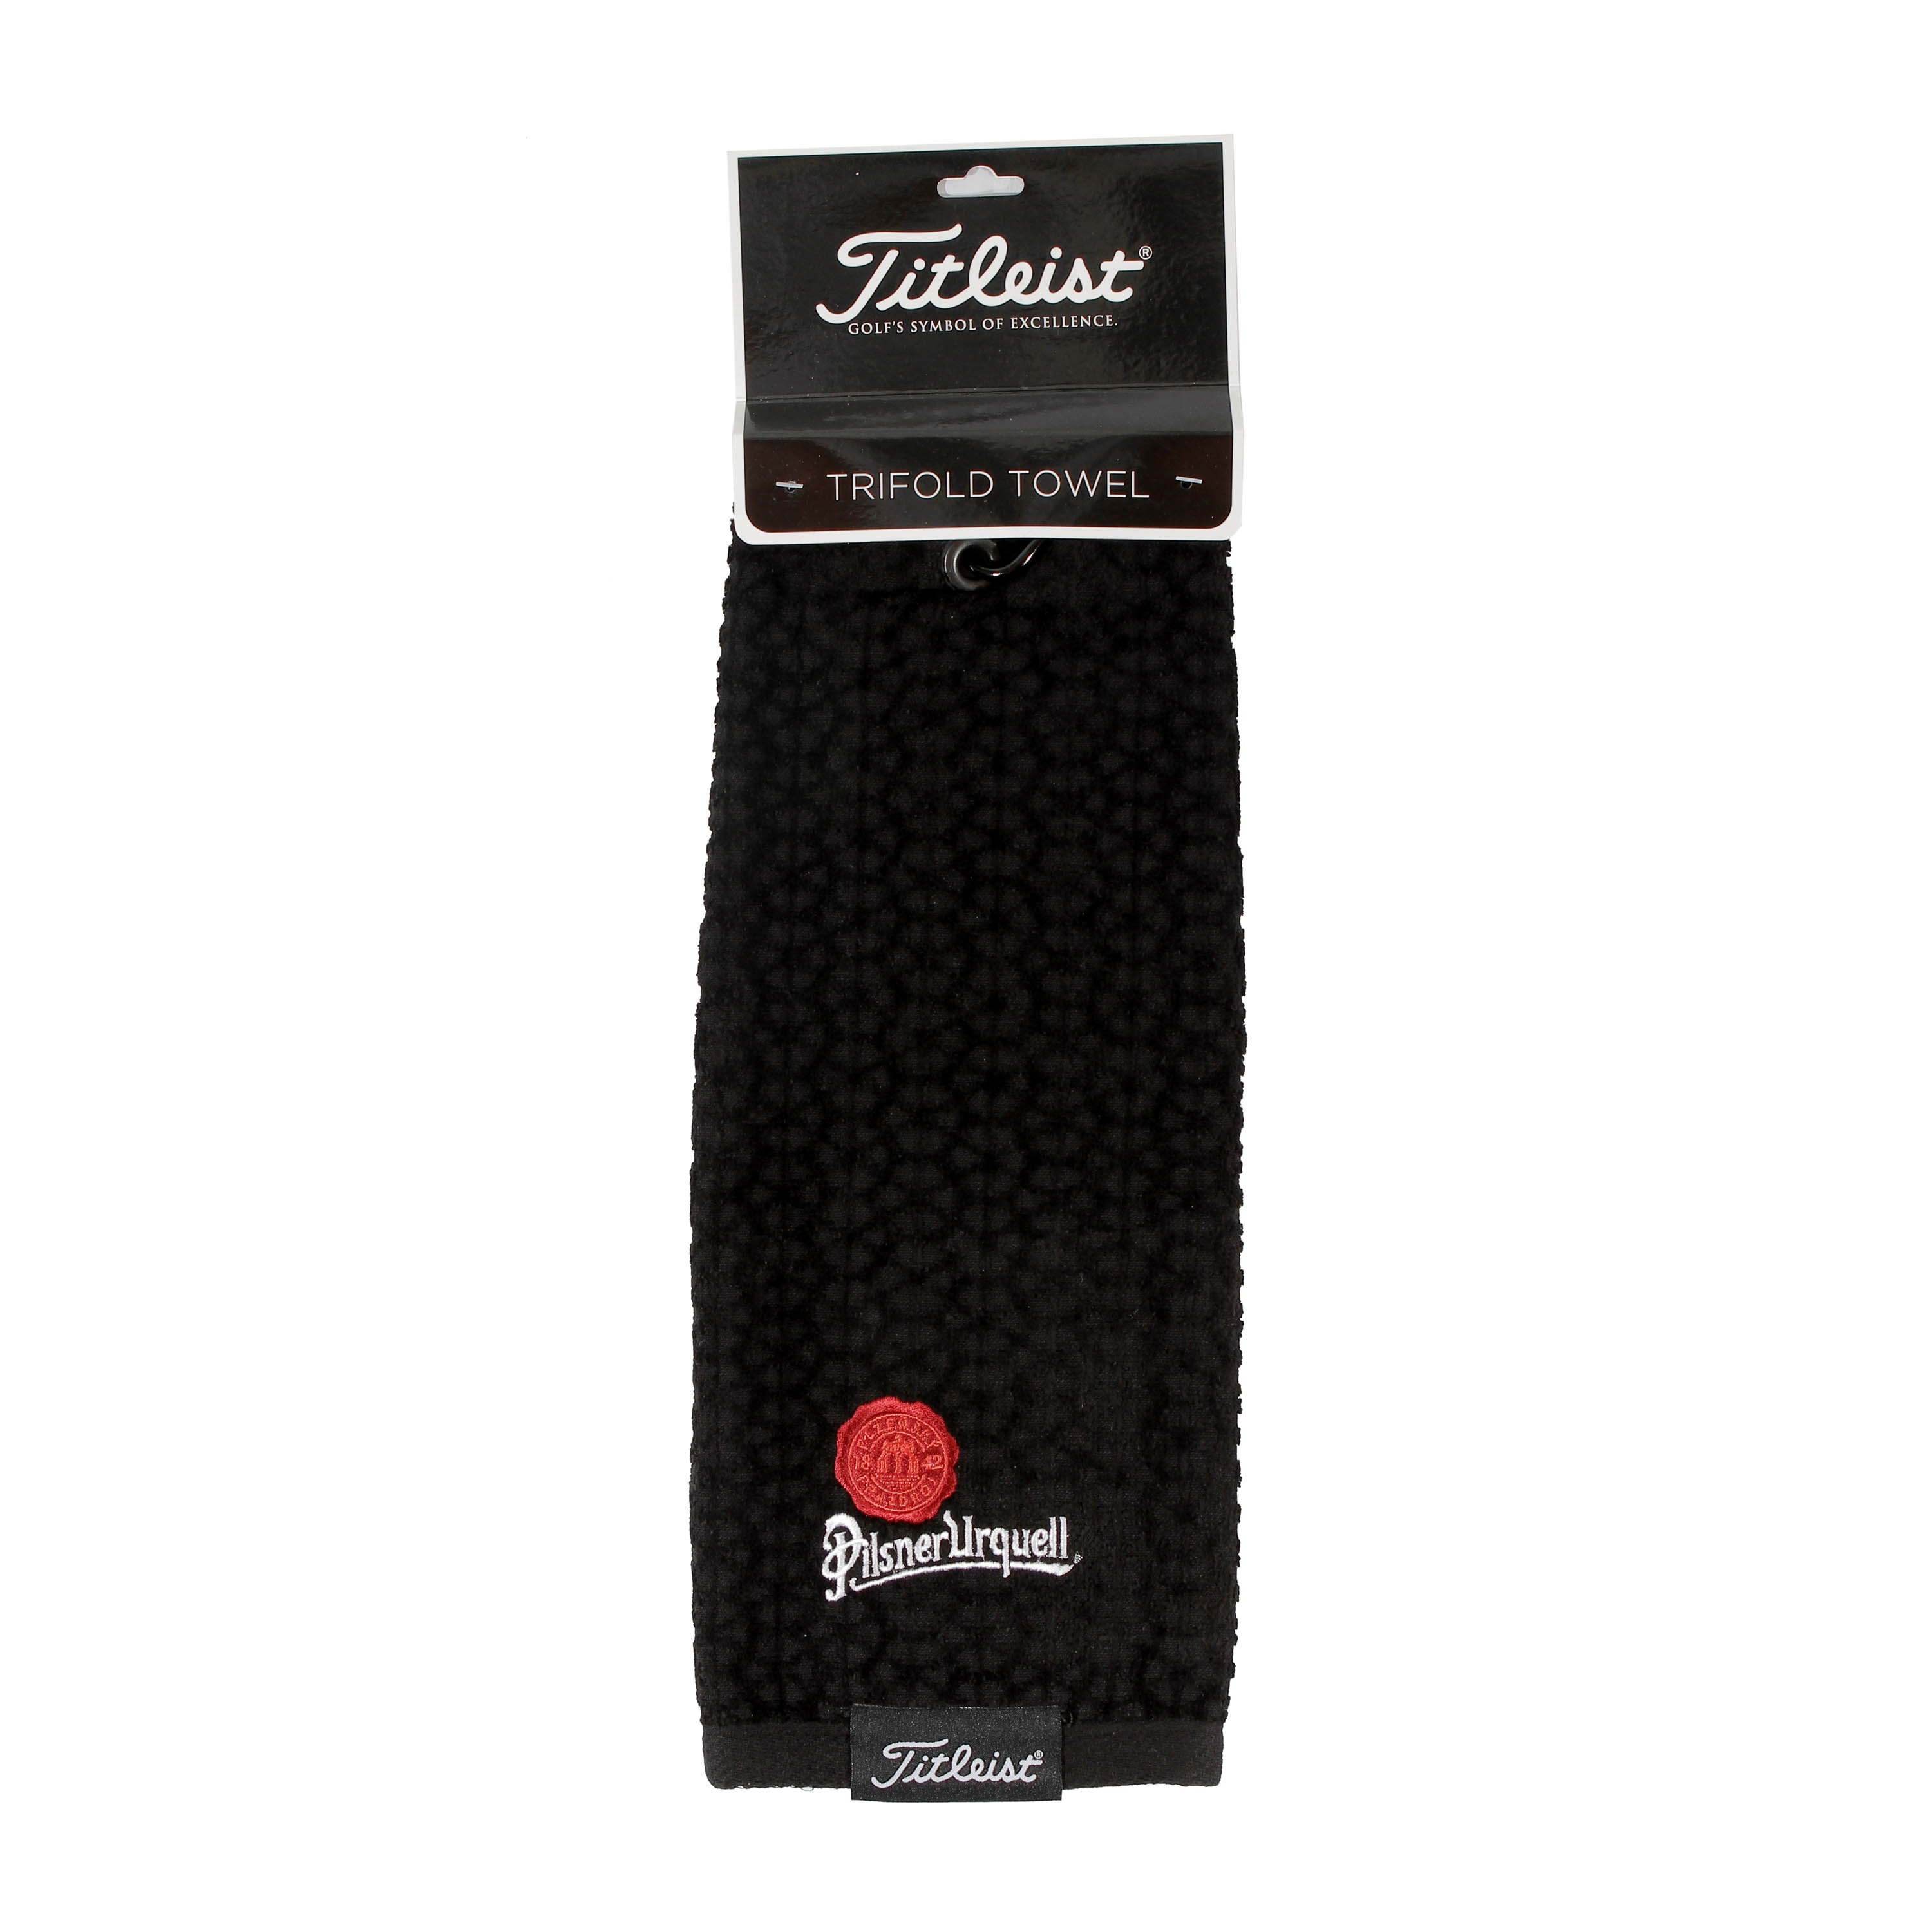 Pilsner Urquell Titleist black golf towel